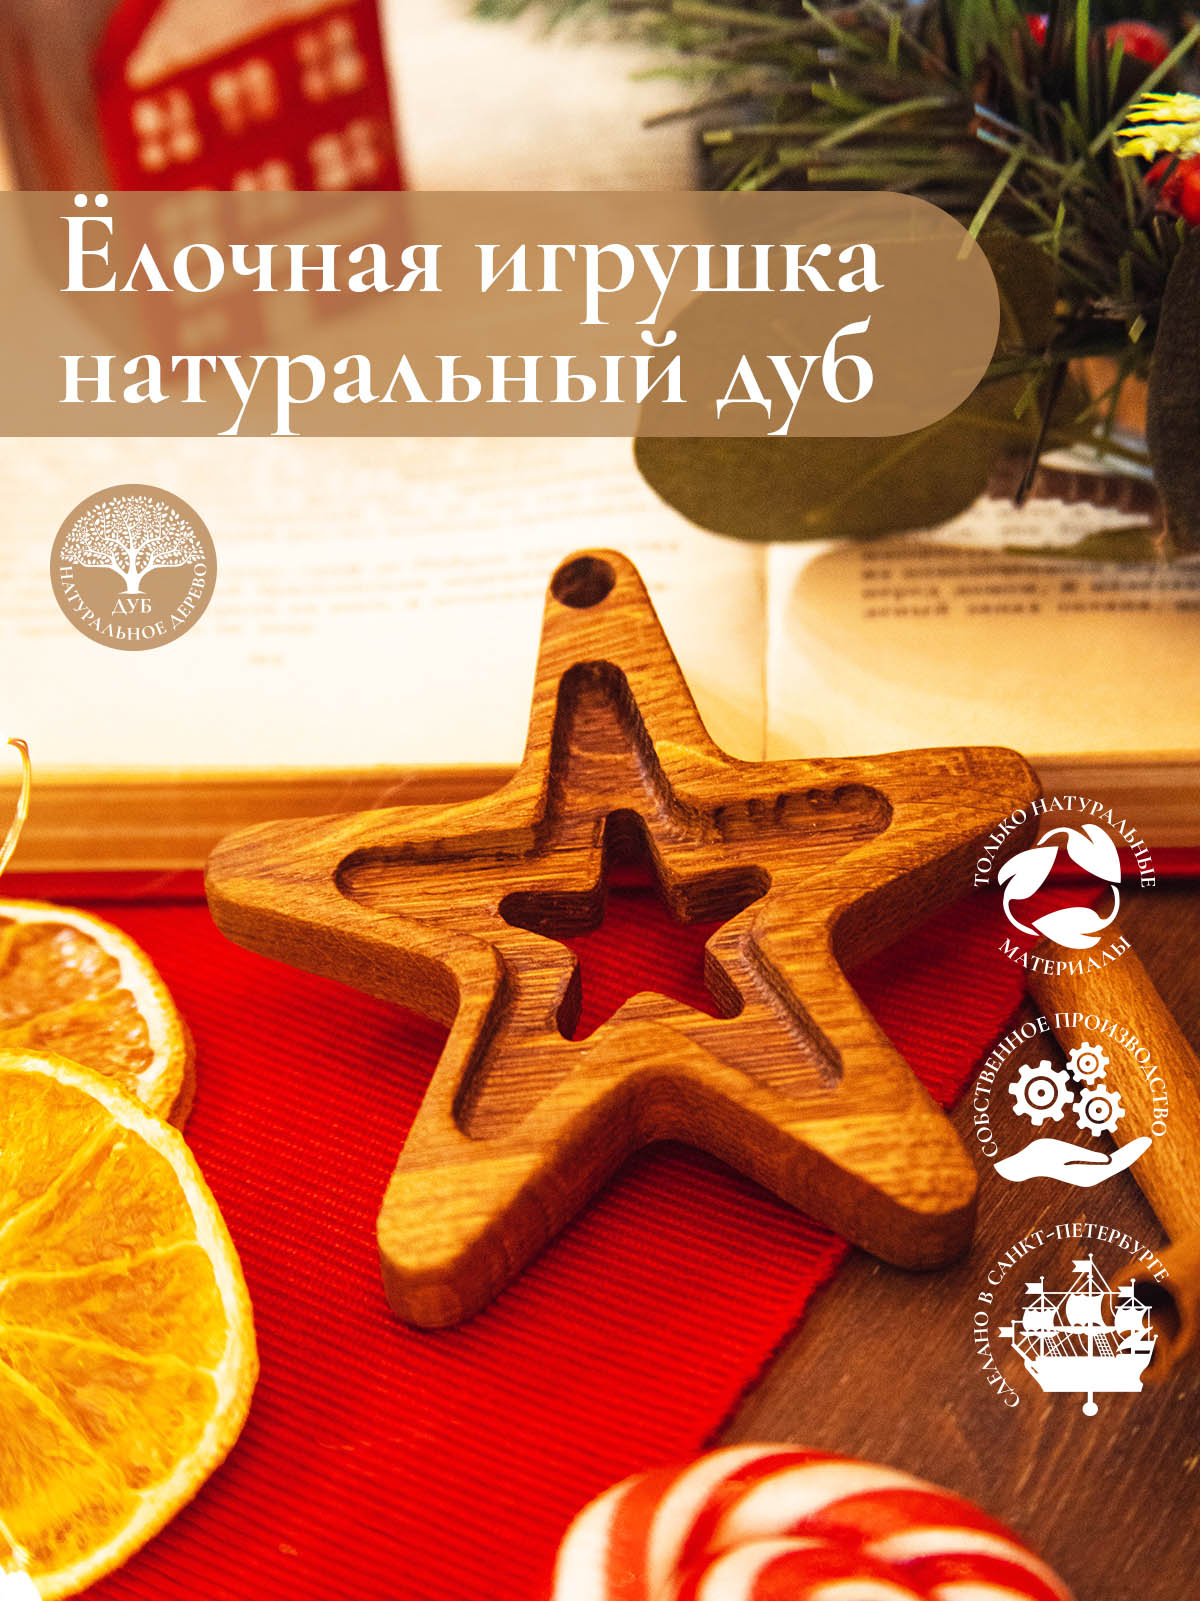 Новогодняя деревянная ёлочная игрушка из натурального дуба Звезда